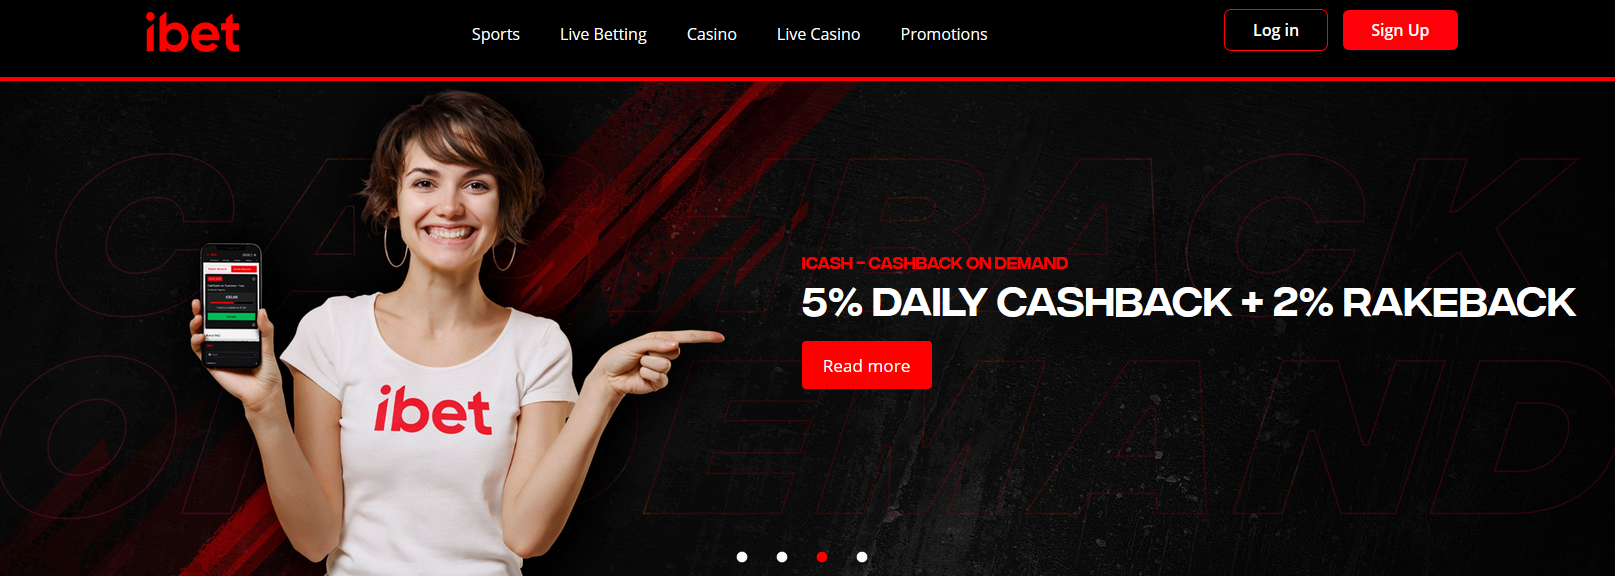 ibet online casino met gratis startgeld